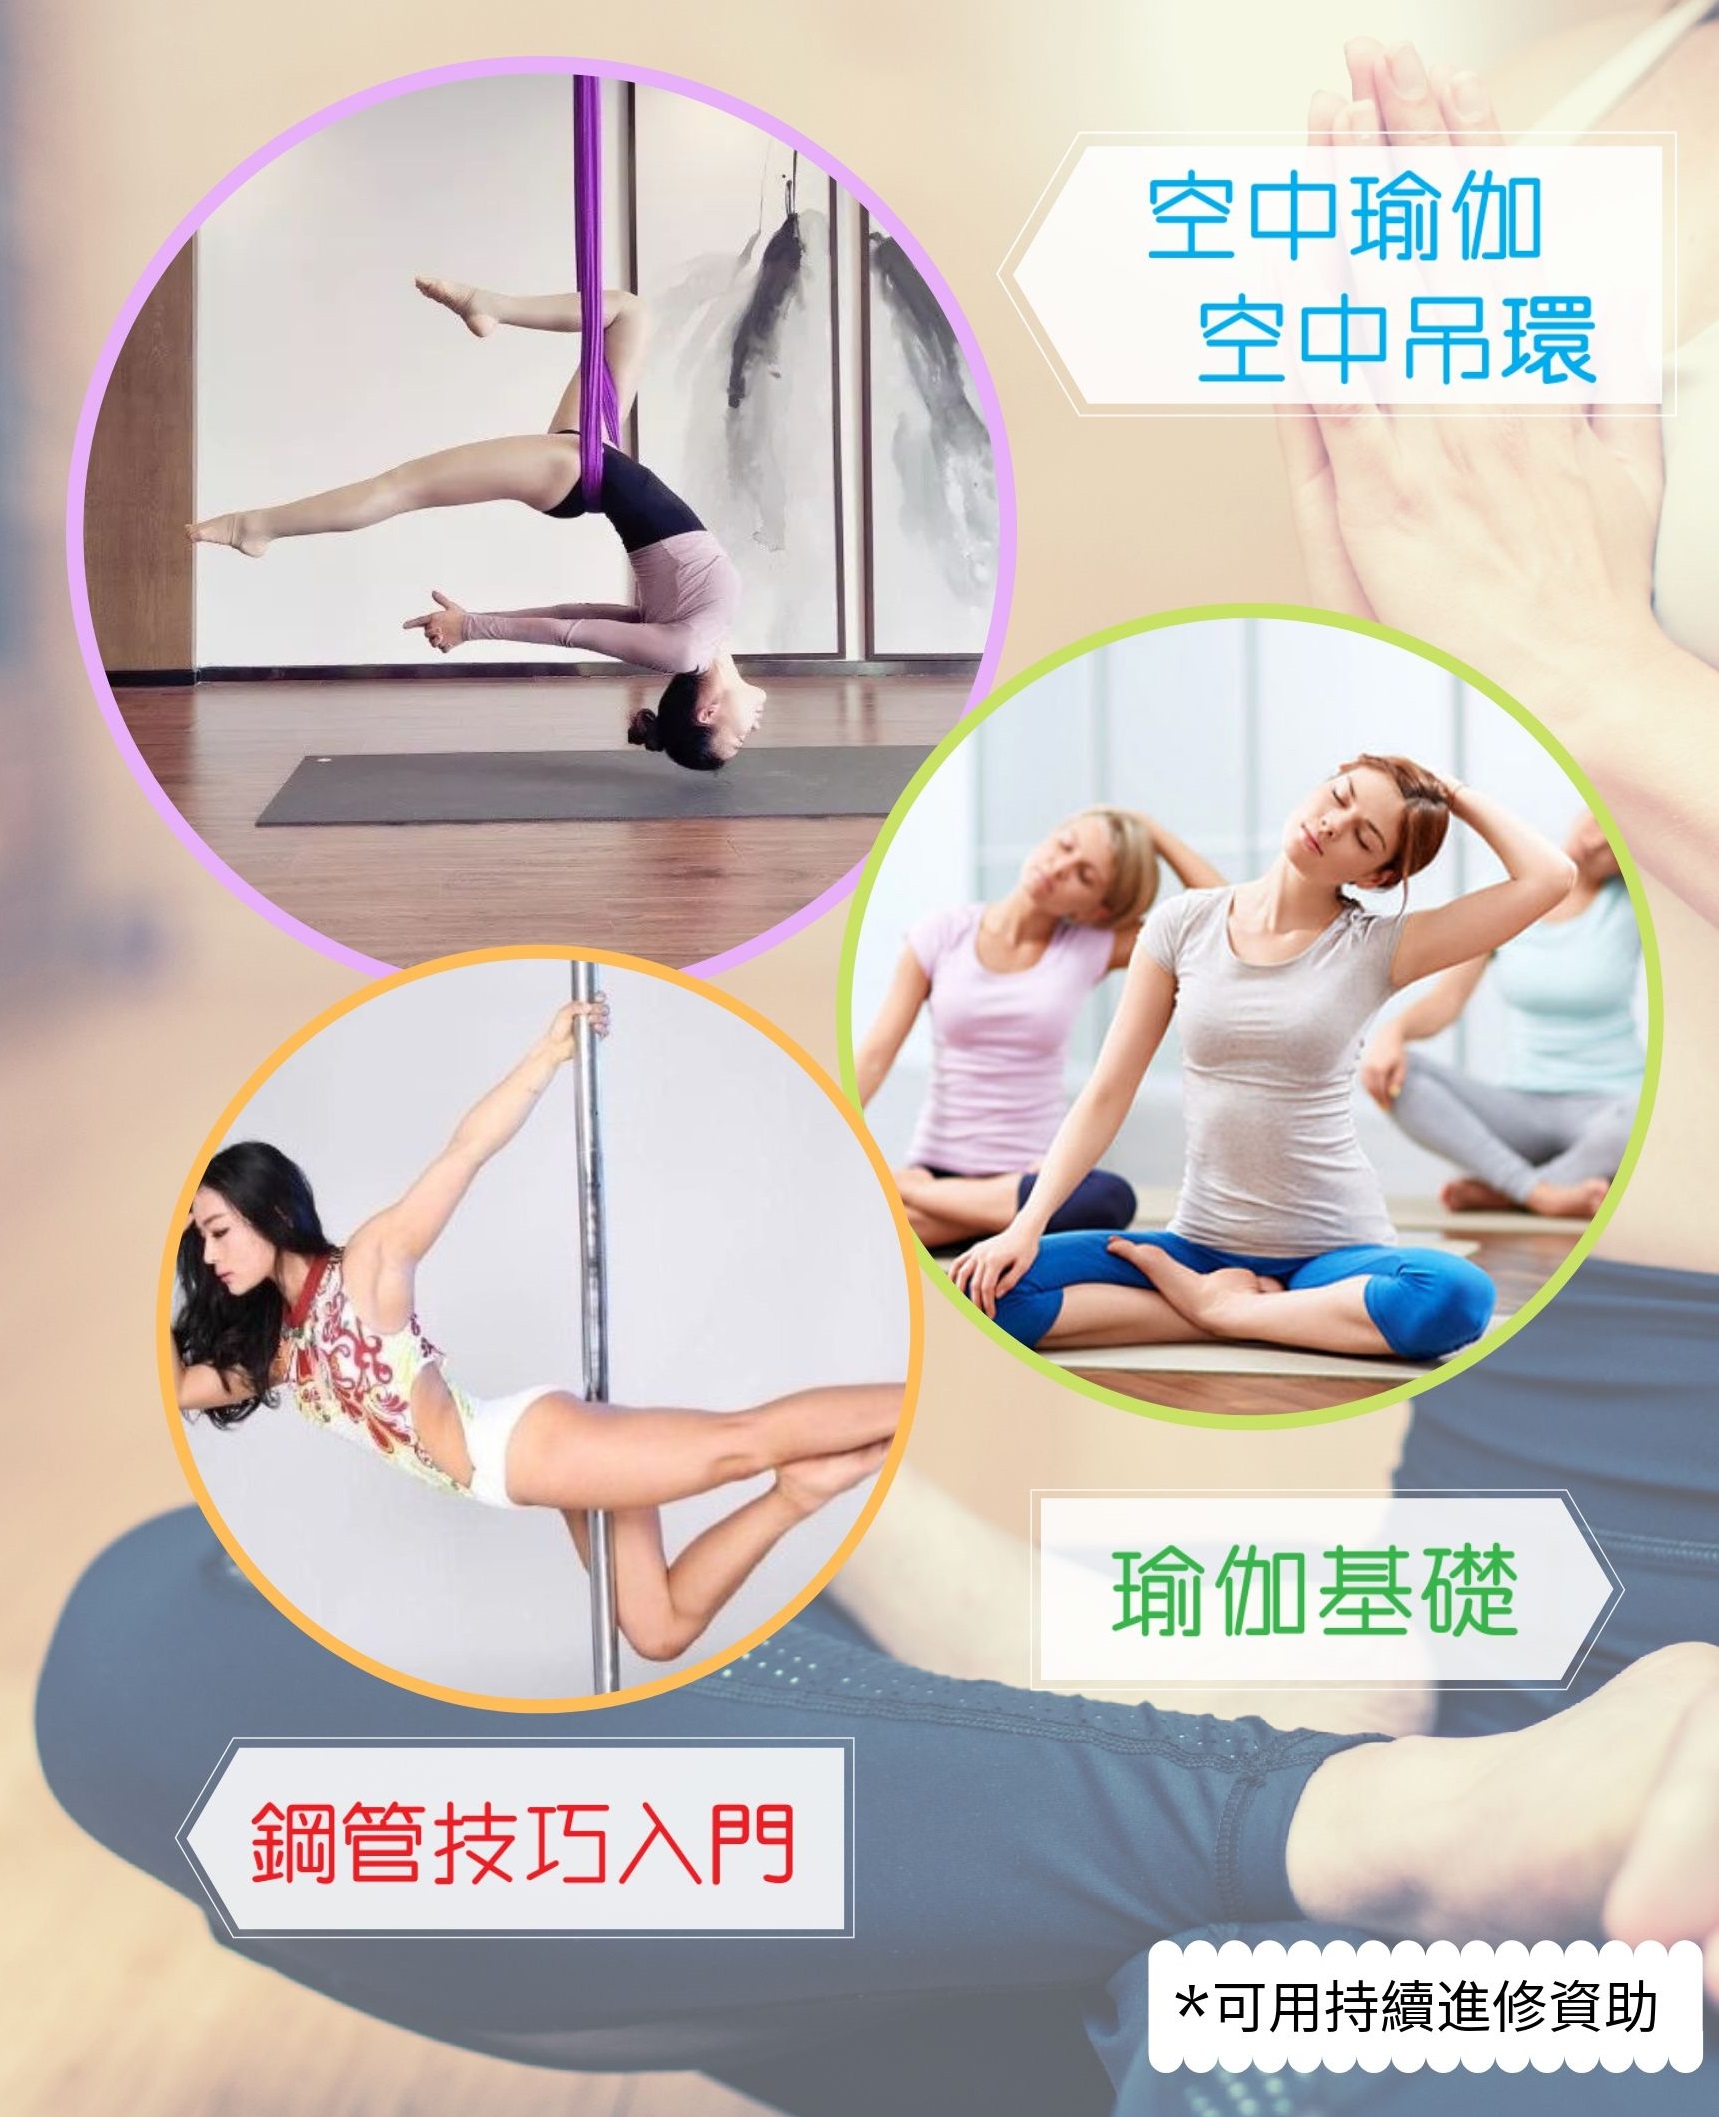 澳門教育進修平台 Macao Education Platform: 健康鋼管舞技巧入門